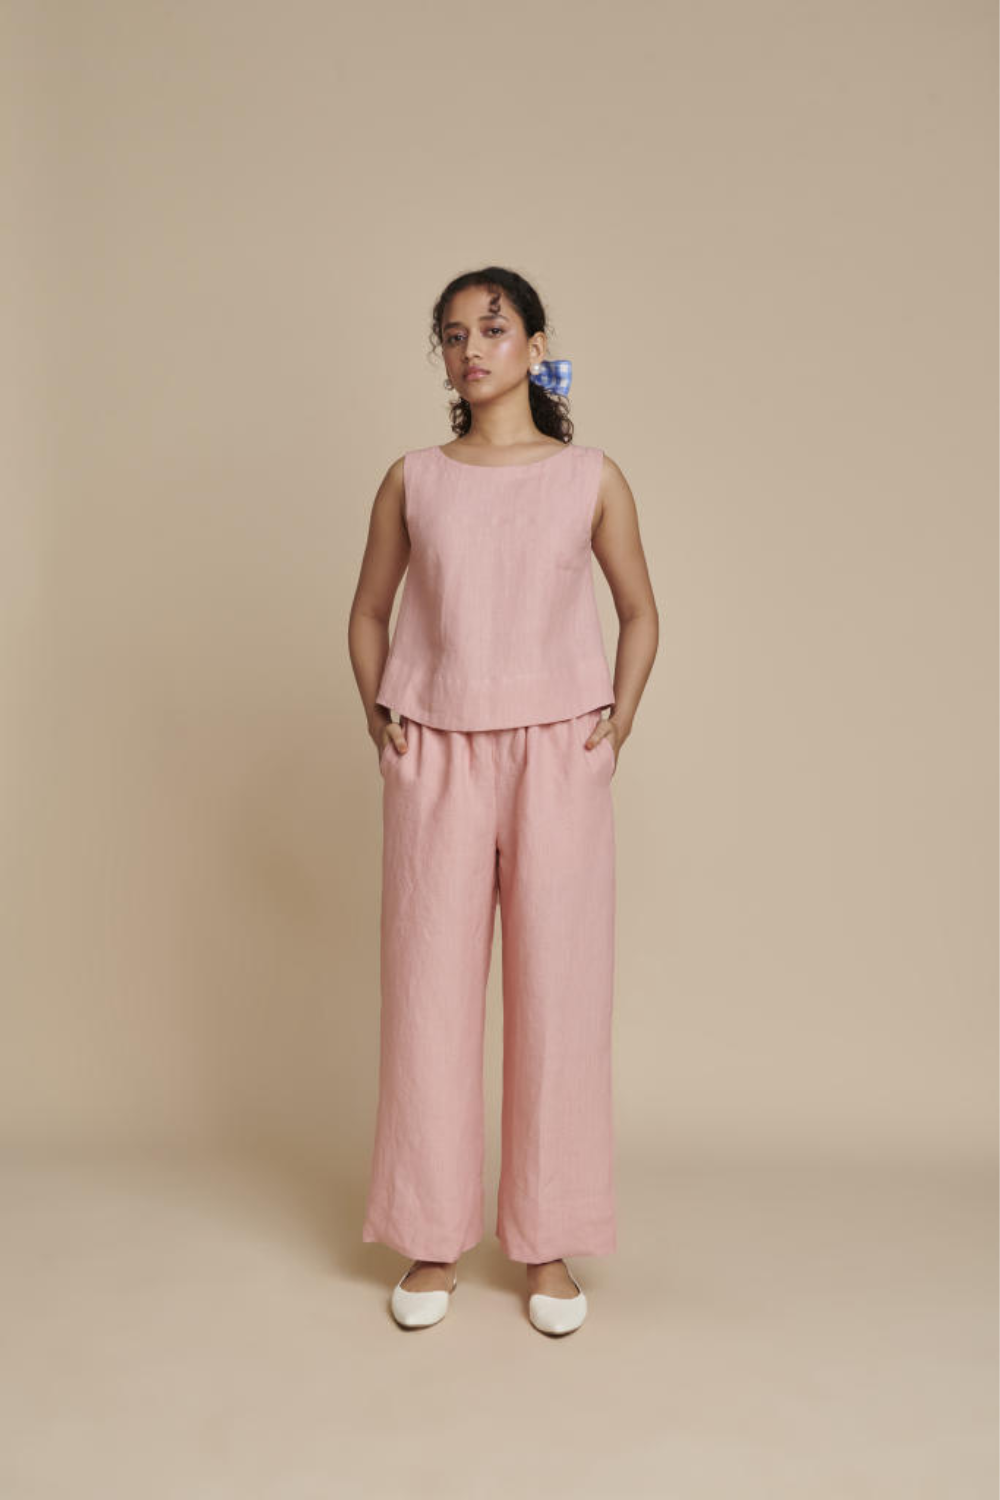 Candy Floss Linen Sleeveless Top & Pyjama Set